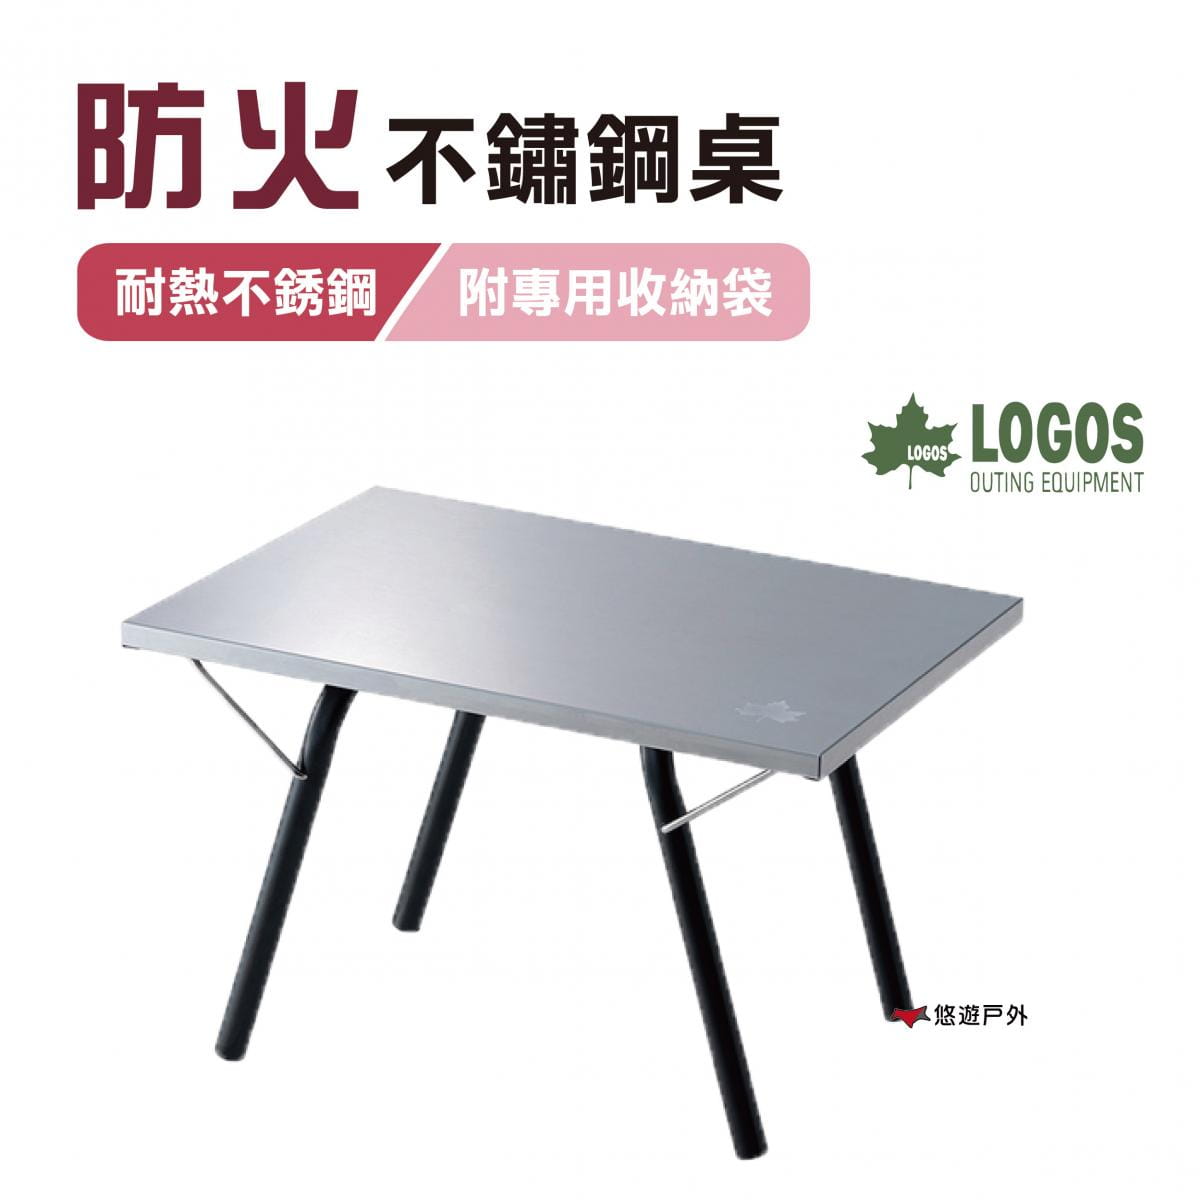 【日本LOGOS】防火不鏽鋼桌 LG73173158 (悠遊戶外) 0